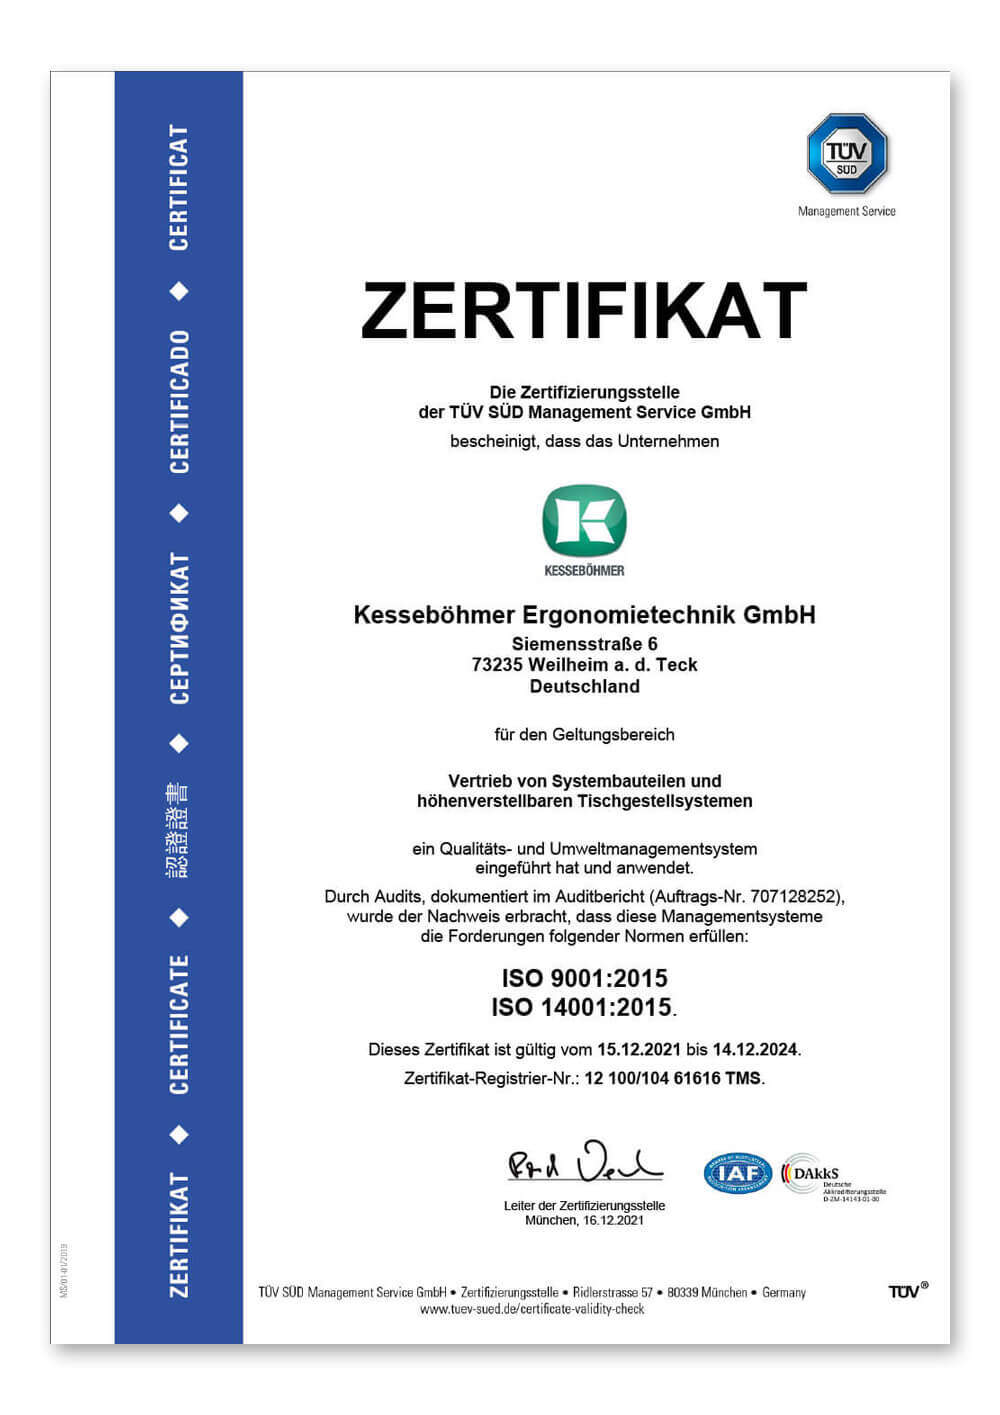 Kesseböhmer Ergonomietechnik GmbH nominated for the „großen Preis